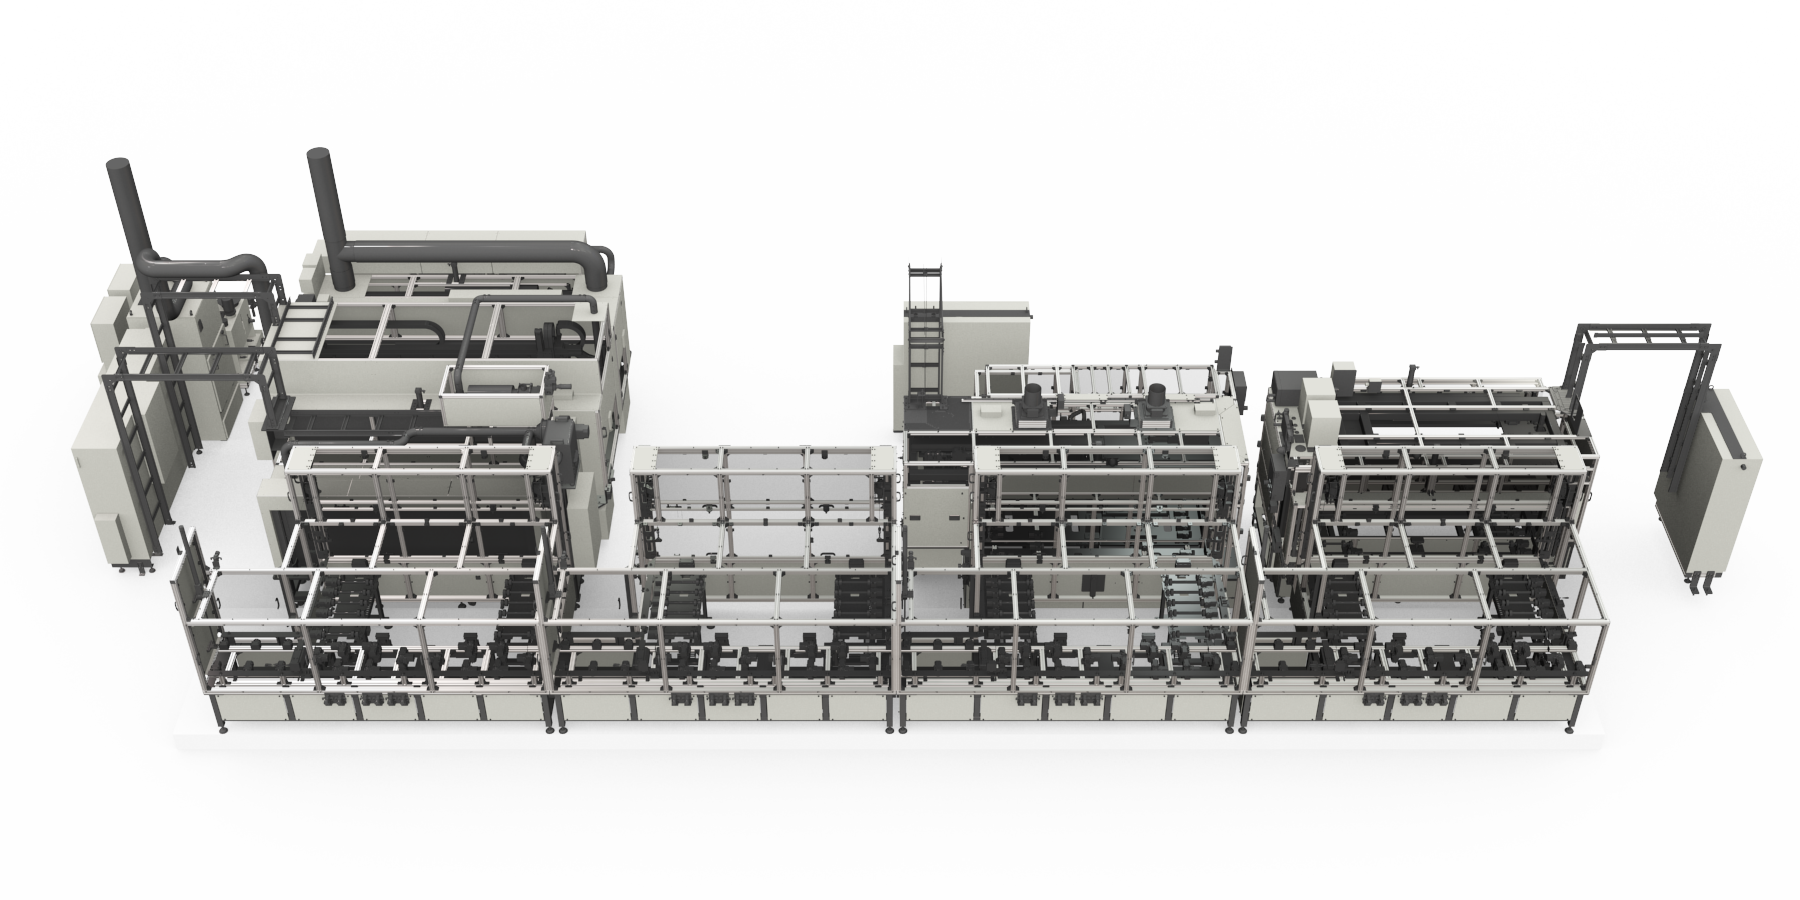 Hydrogen tank assembly line